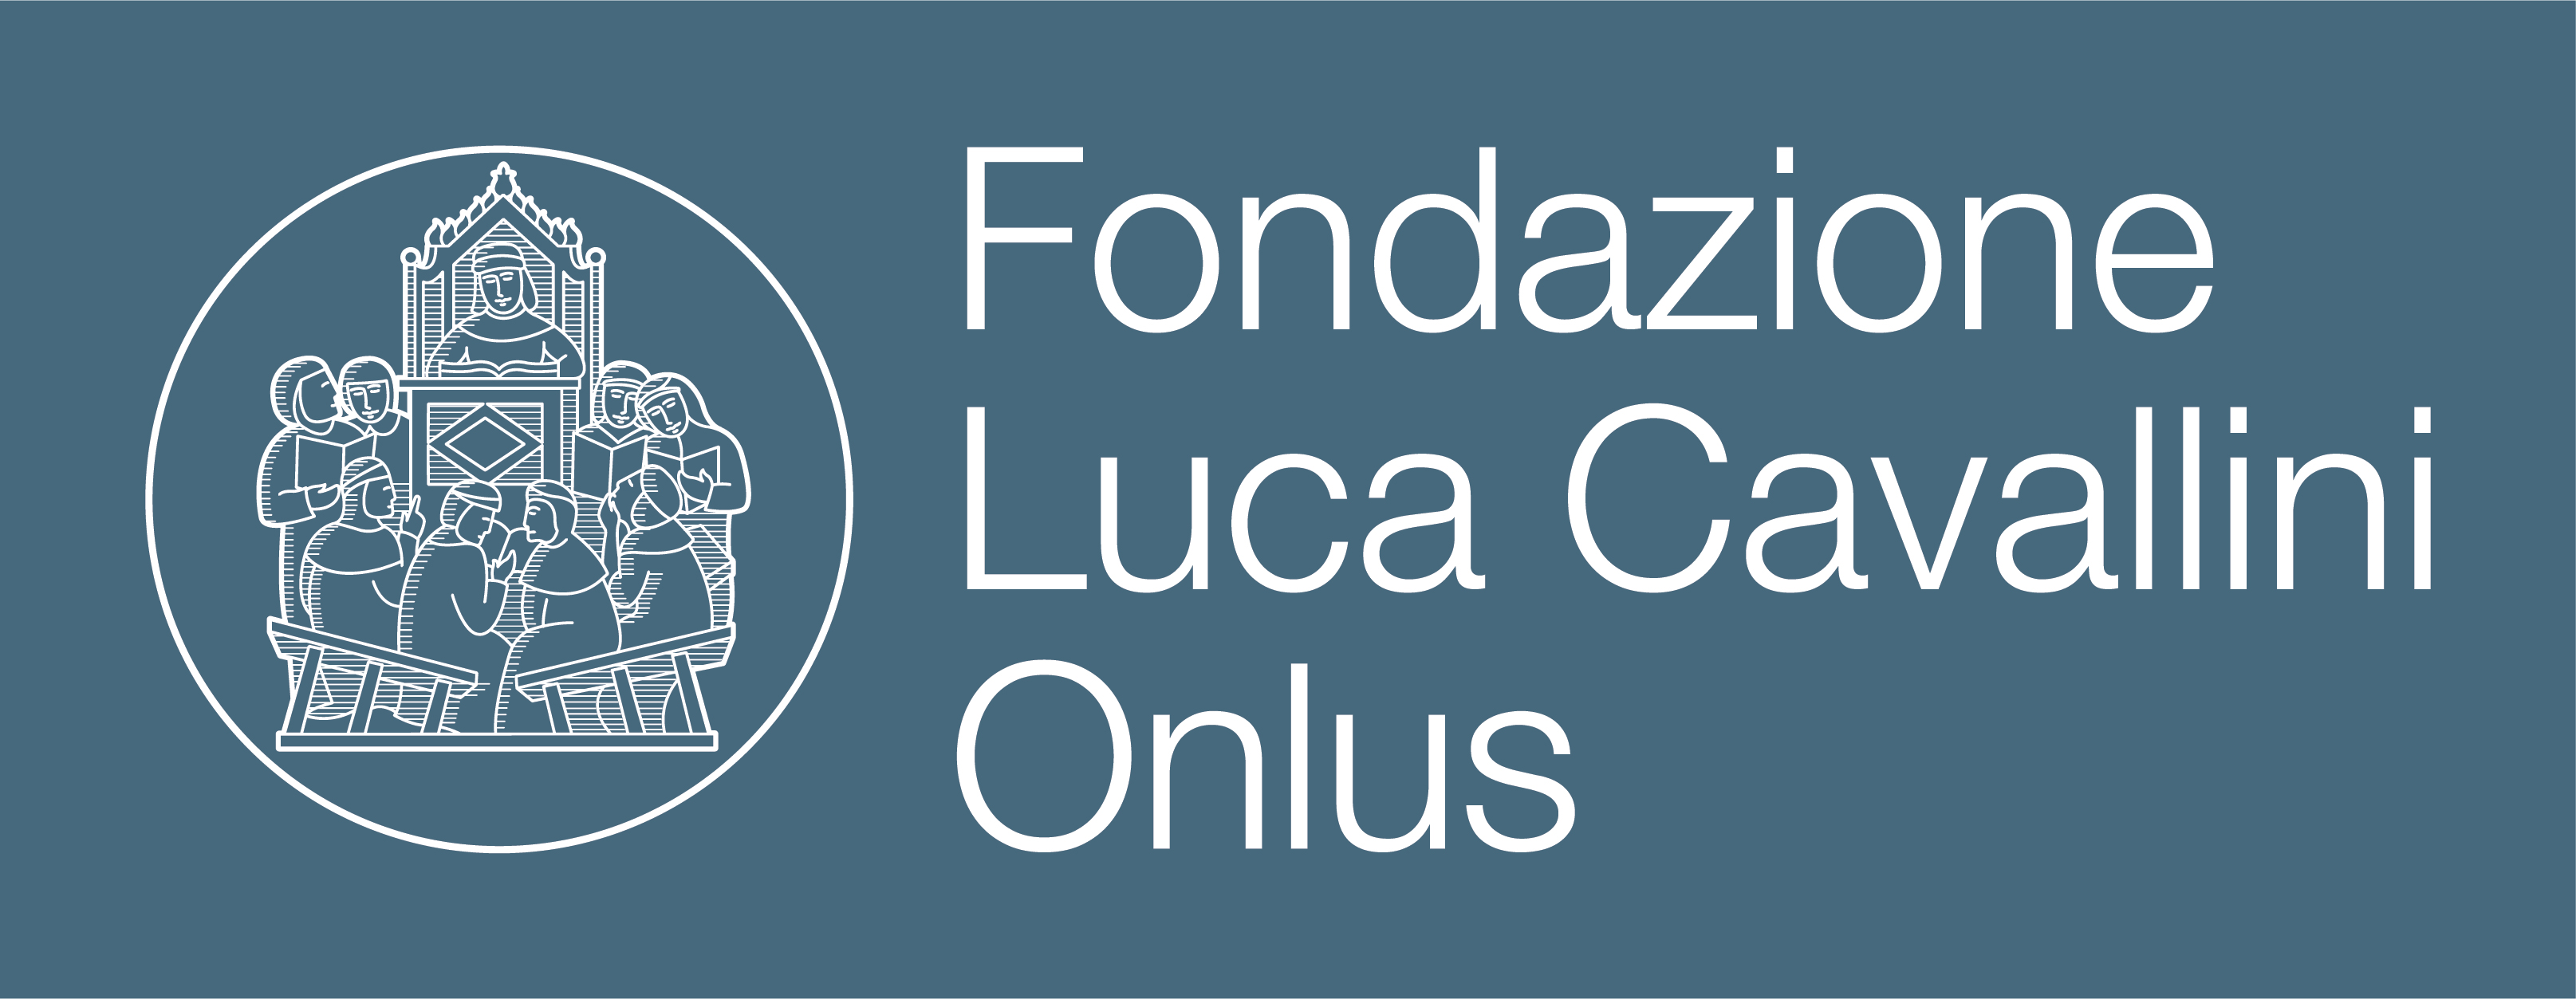 Logo Fondazione Cavallini